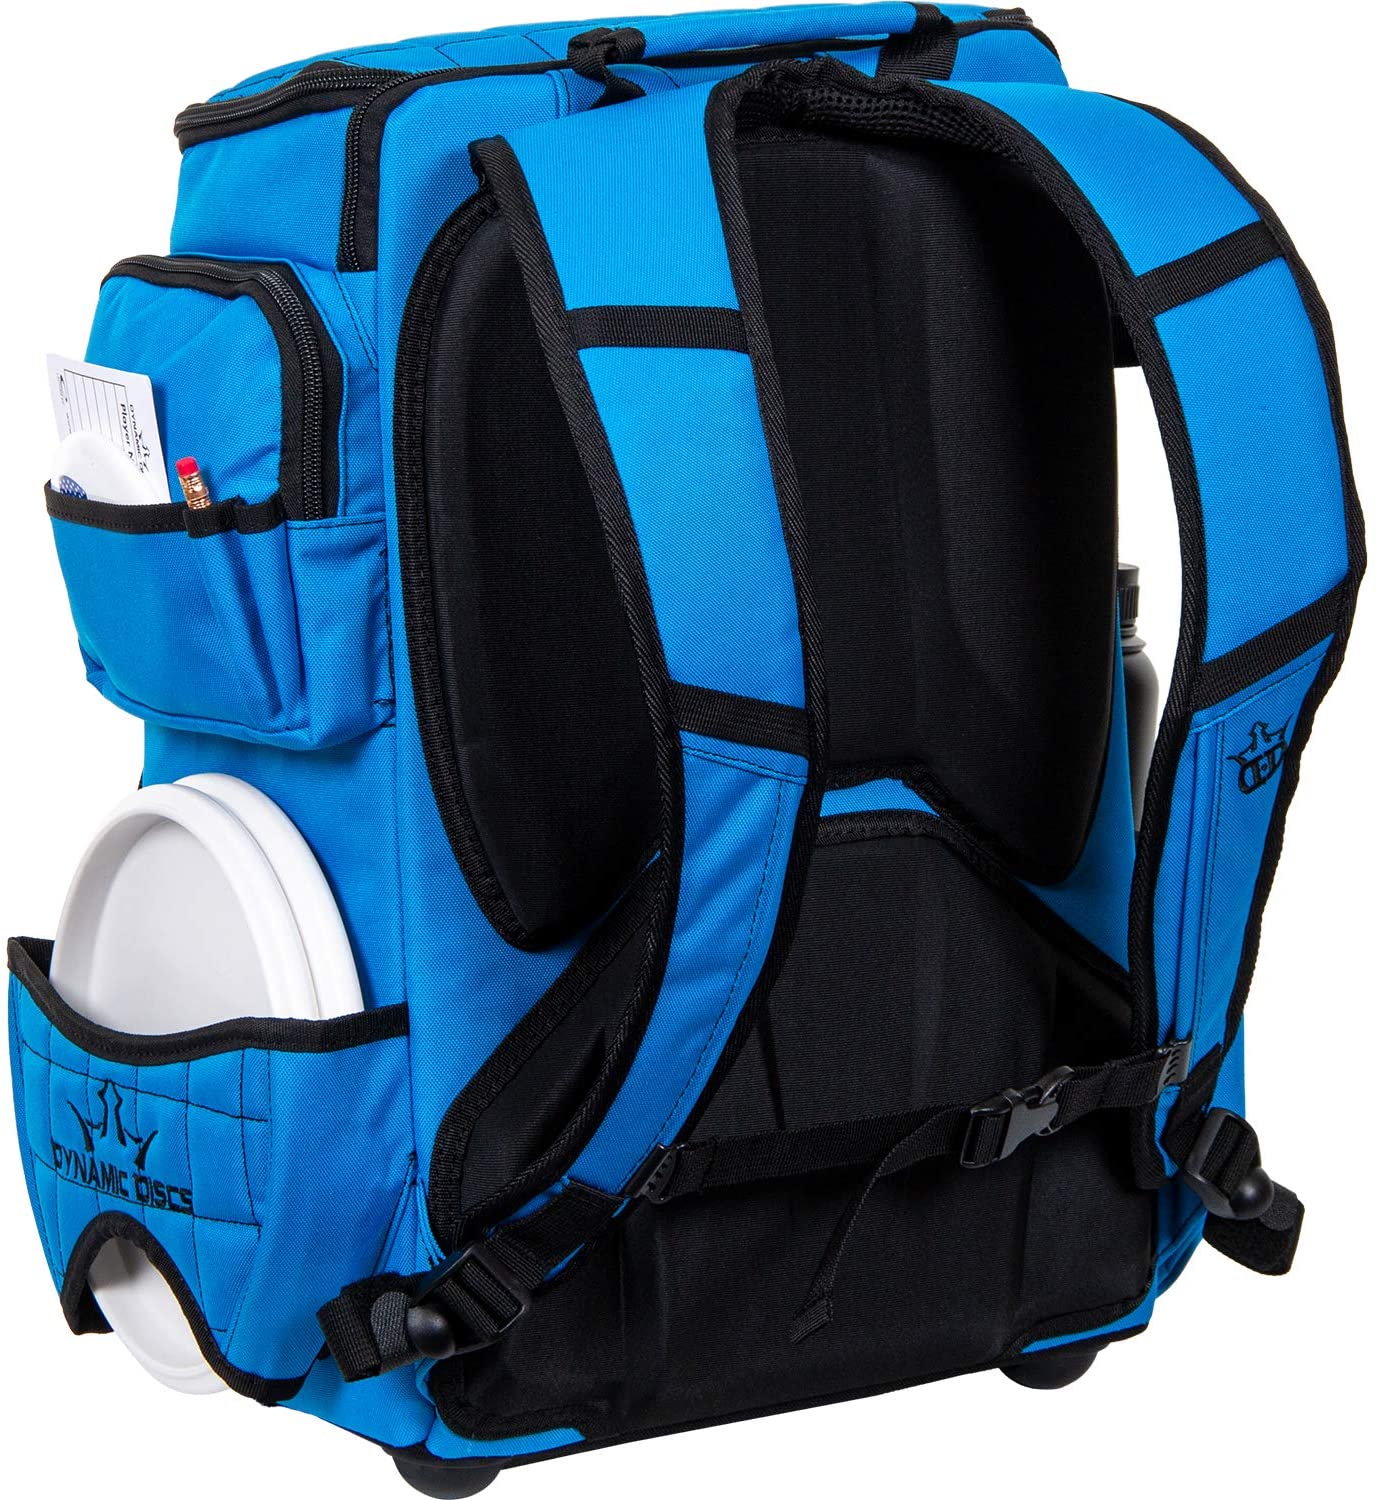 Dynamic Discs Combat Ranger backpack Disc Golf Bag - Cobalt Blue